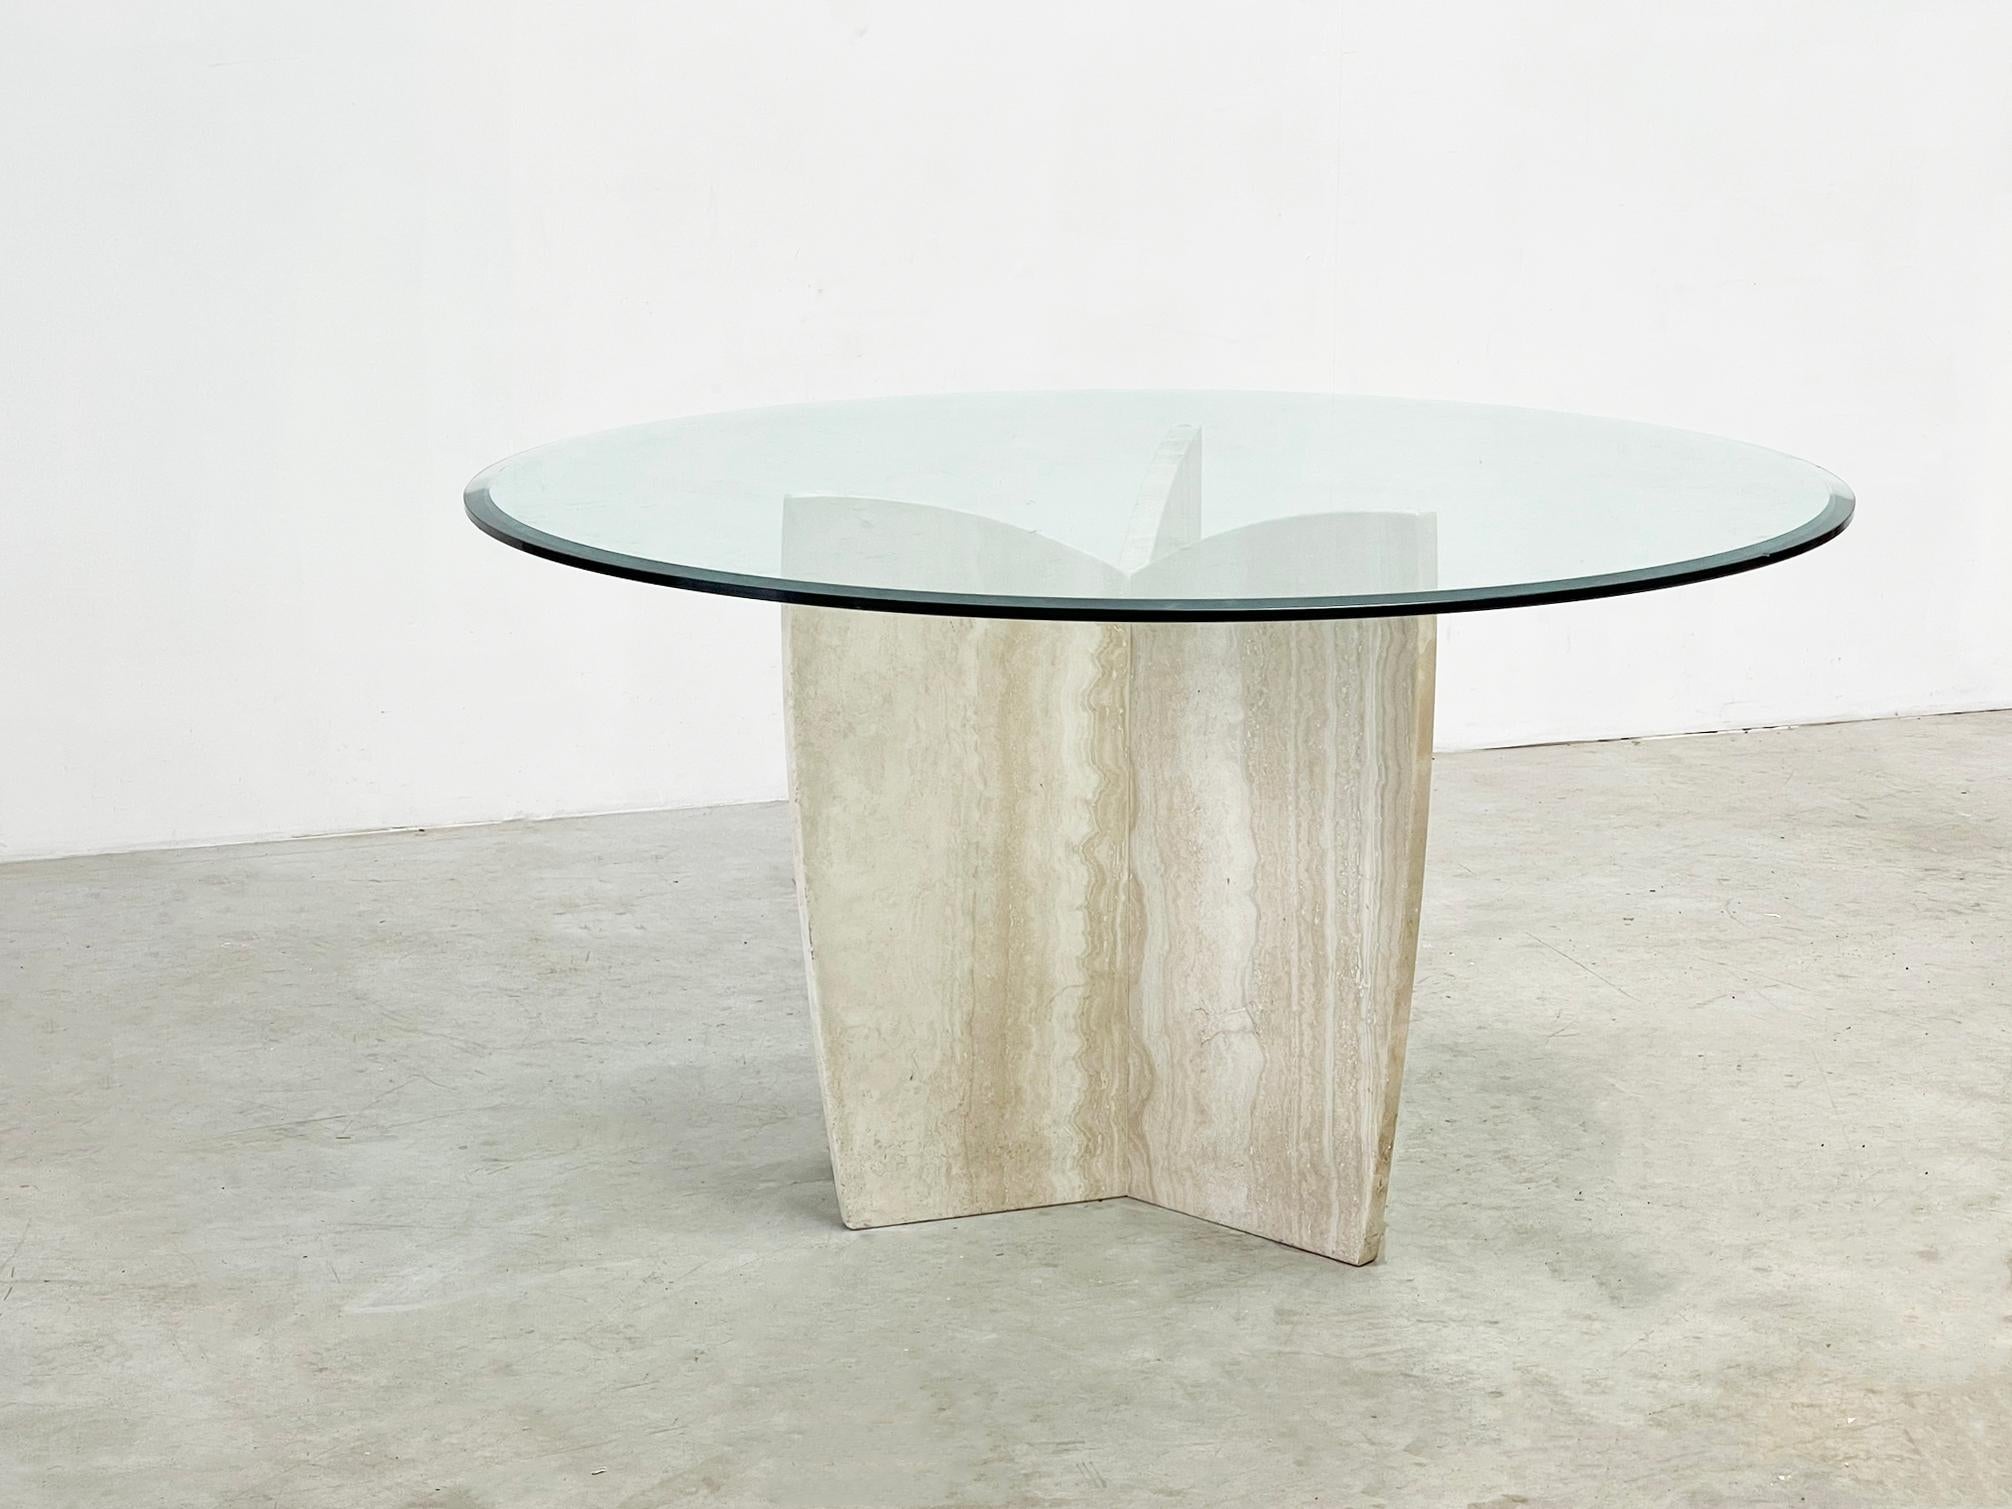  

Dieser Esstisch aus Travertin mit einer Glasplatte ist wahrscheinlich von  in den 1980er Jahren aus Italien. Sein elegantes Design und die italienische Handwerkskunst machen ihn zu einem zeitlosen Mittelpunkt für jeden Essbereich. Es passen